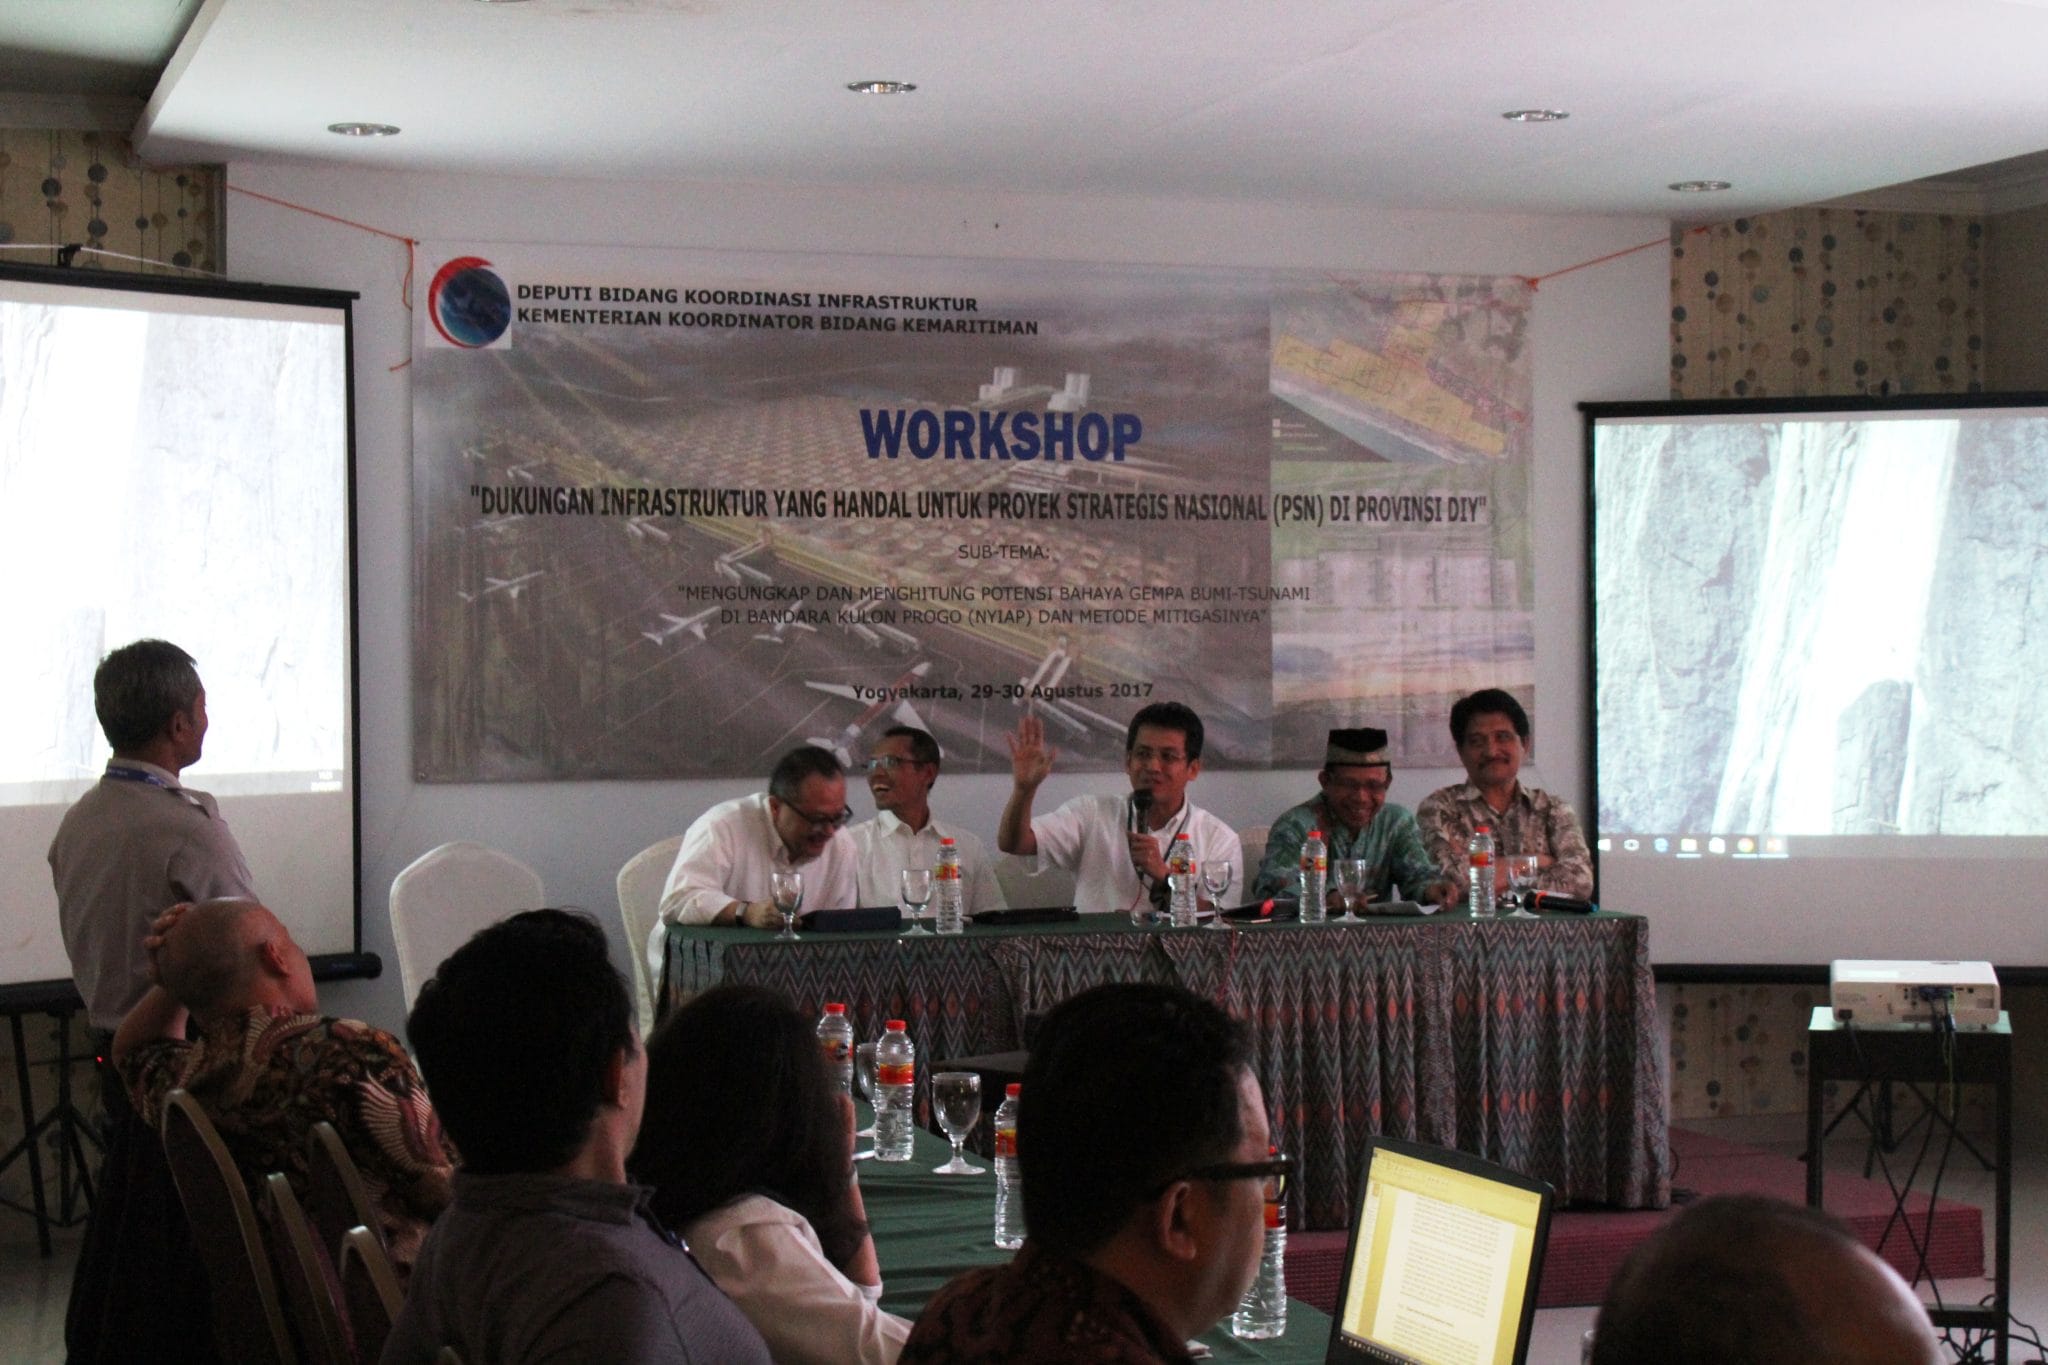 Workshop Potensi Bahaya Gempa bumi - Tsunami di Bandara Kulon Progo (NYIAP) dan Metode Mitigasinya